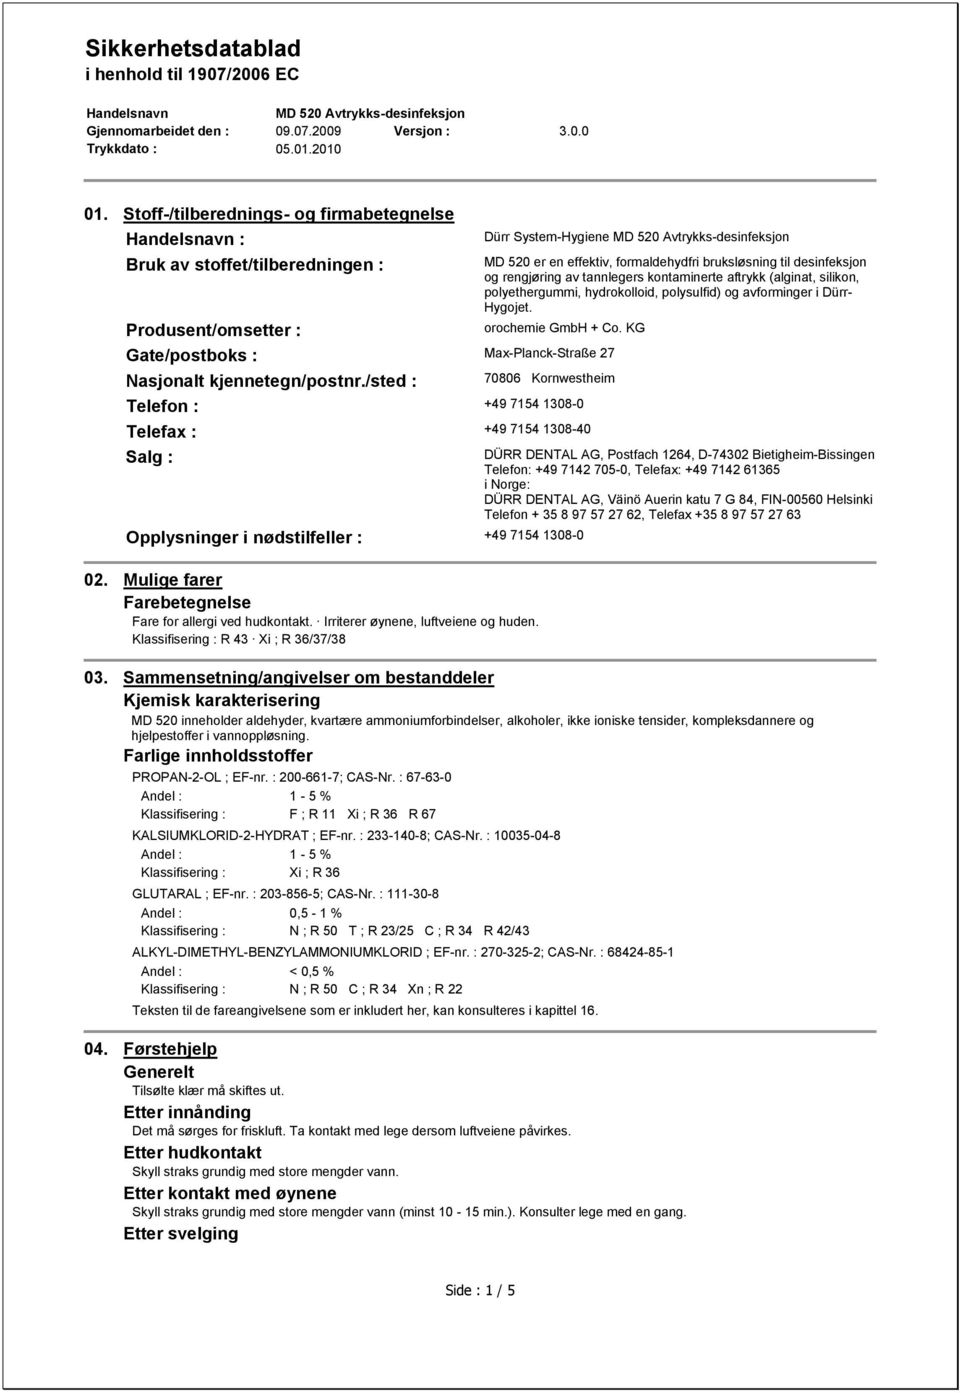 polysulfid) og avforminger i Dürr- Hygojet. orochemie GmbH + Co. KG 70806 Kornwestheim Telefon : +49 7154 1308-0 Telefax : +49 7154 1308-40 Salg : Opplysninger i nødstilfeller : +49 7154 1308-0 02.